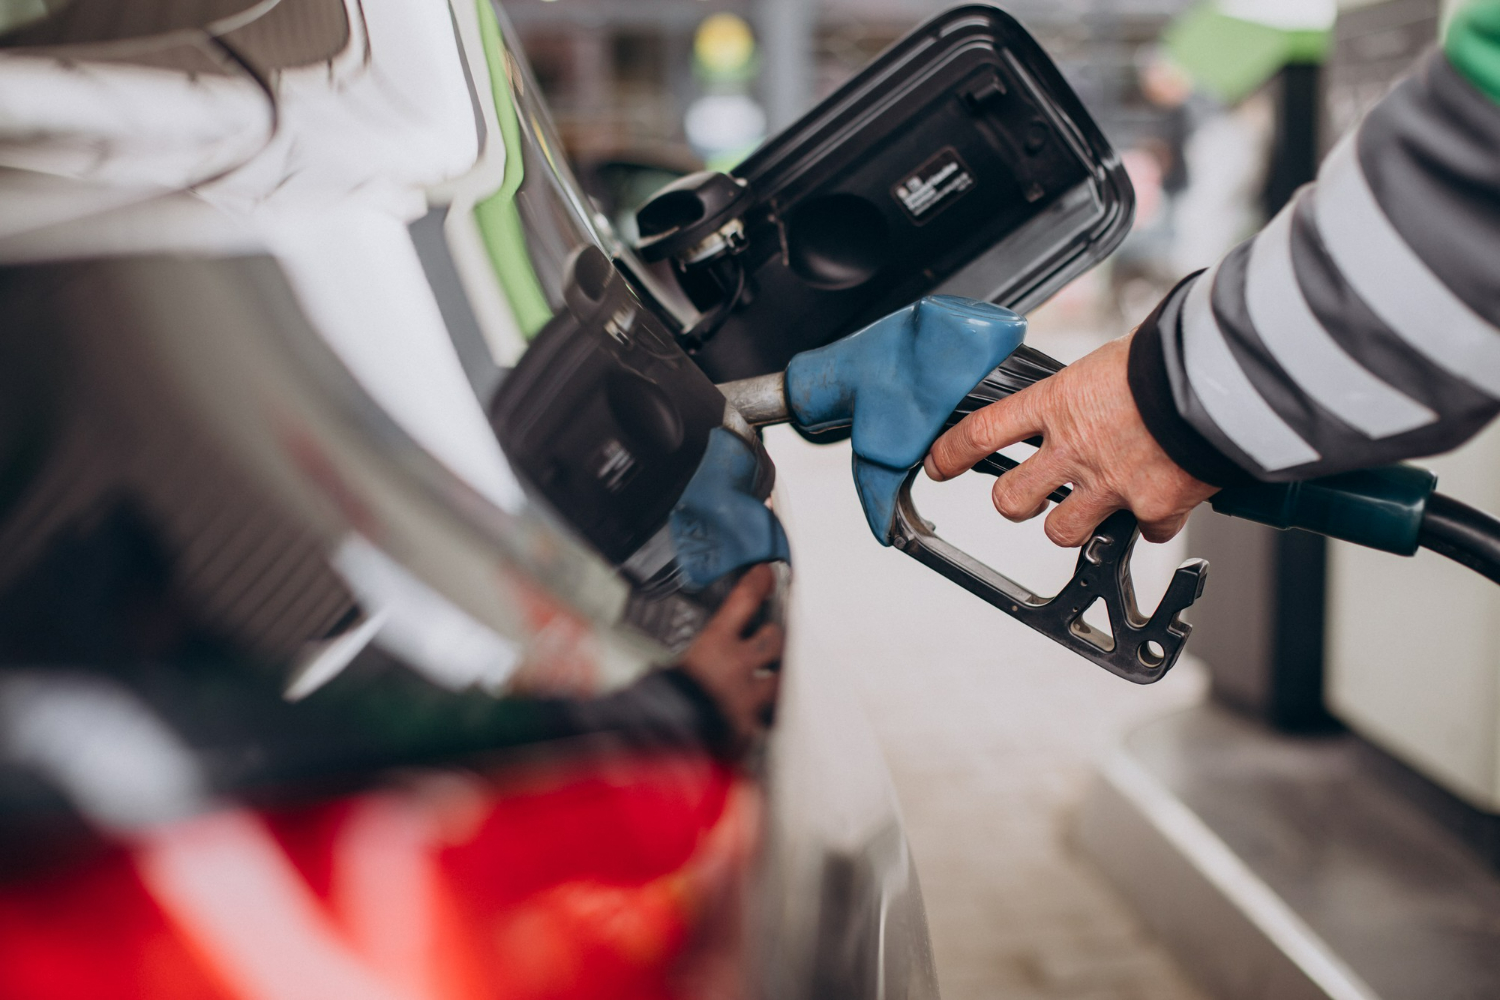 Gasolina fica MAIS BARATA em 18 estados nesta semana